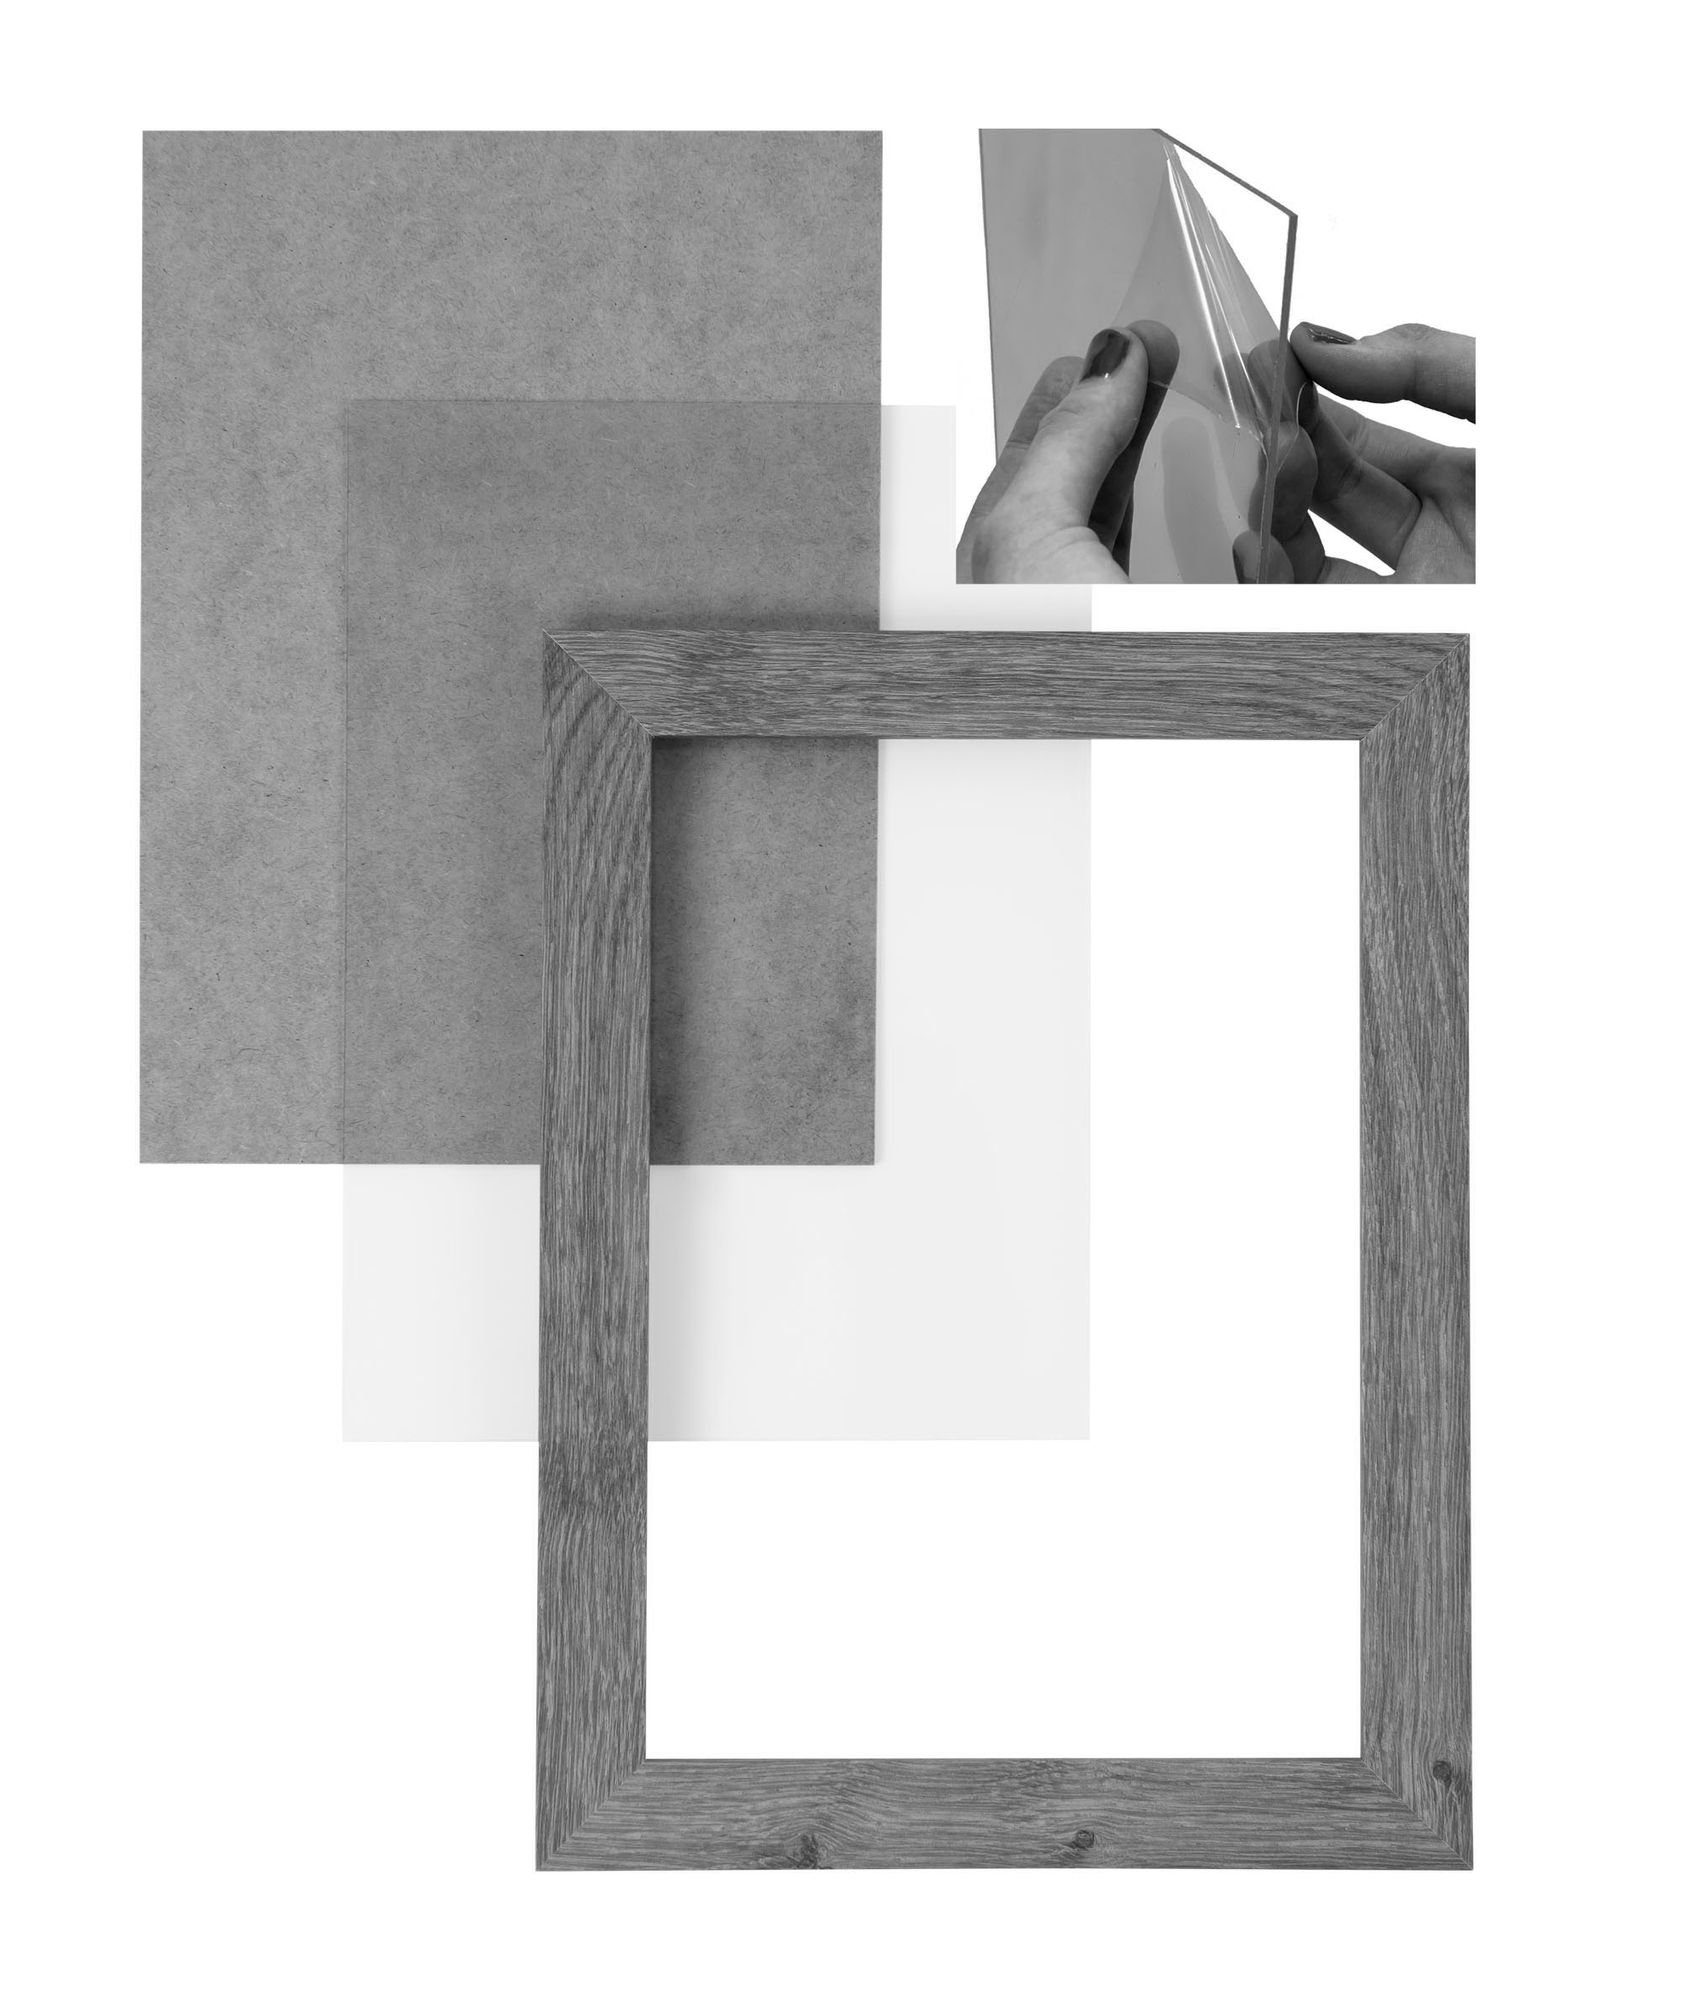 'Collage' Aufhänger Rückwand nach Bilderrahmen matt CLAMARO handgefertigt Rahmen und weiss Acrylglas, inkl. Holz Clamaro MDF Maß 26x36 FSC® in eckiger Bilderrahmen Moderner